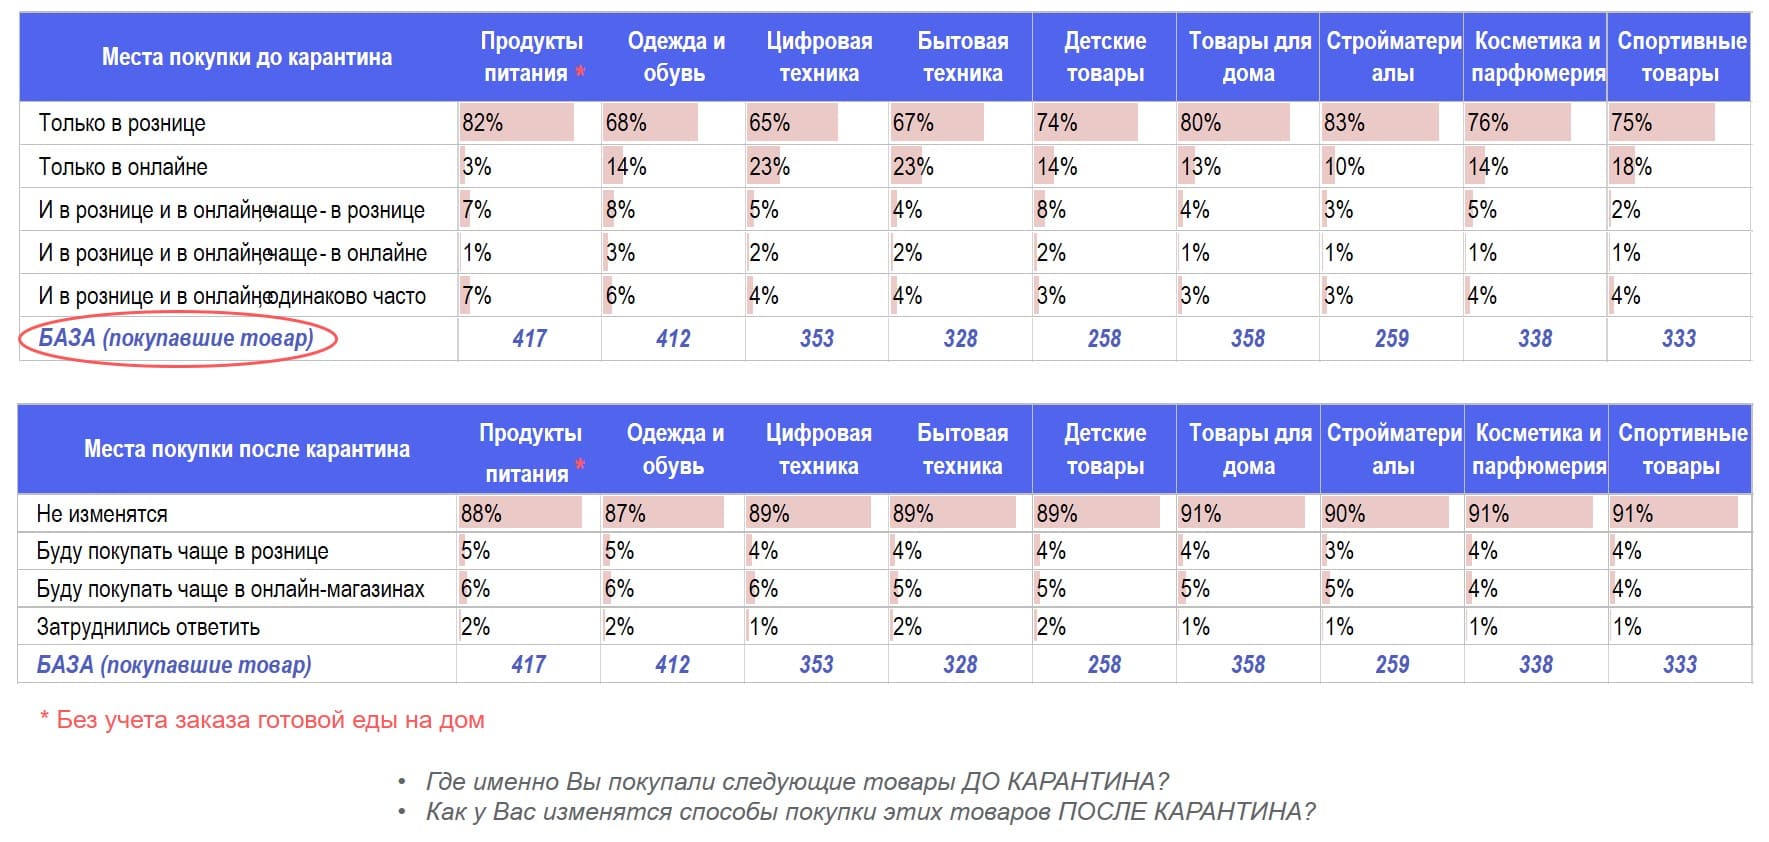 Сканмаркет (исследование жителей Москвы) Места покупки различных категорий товаров до и после карантина